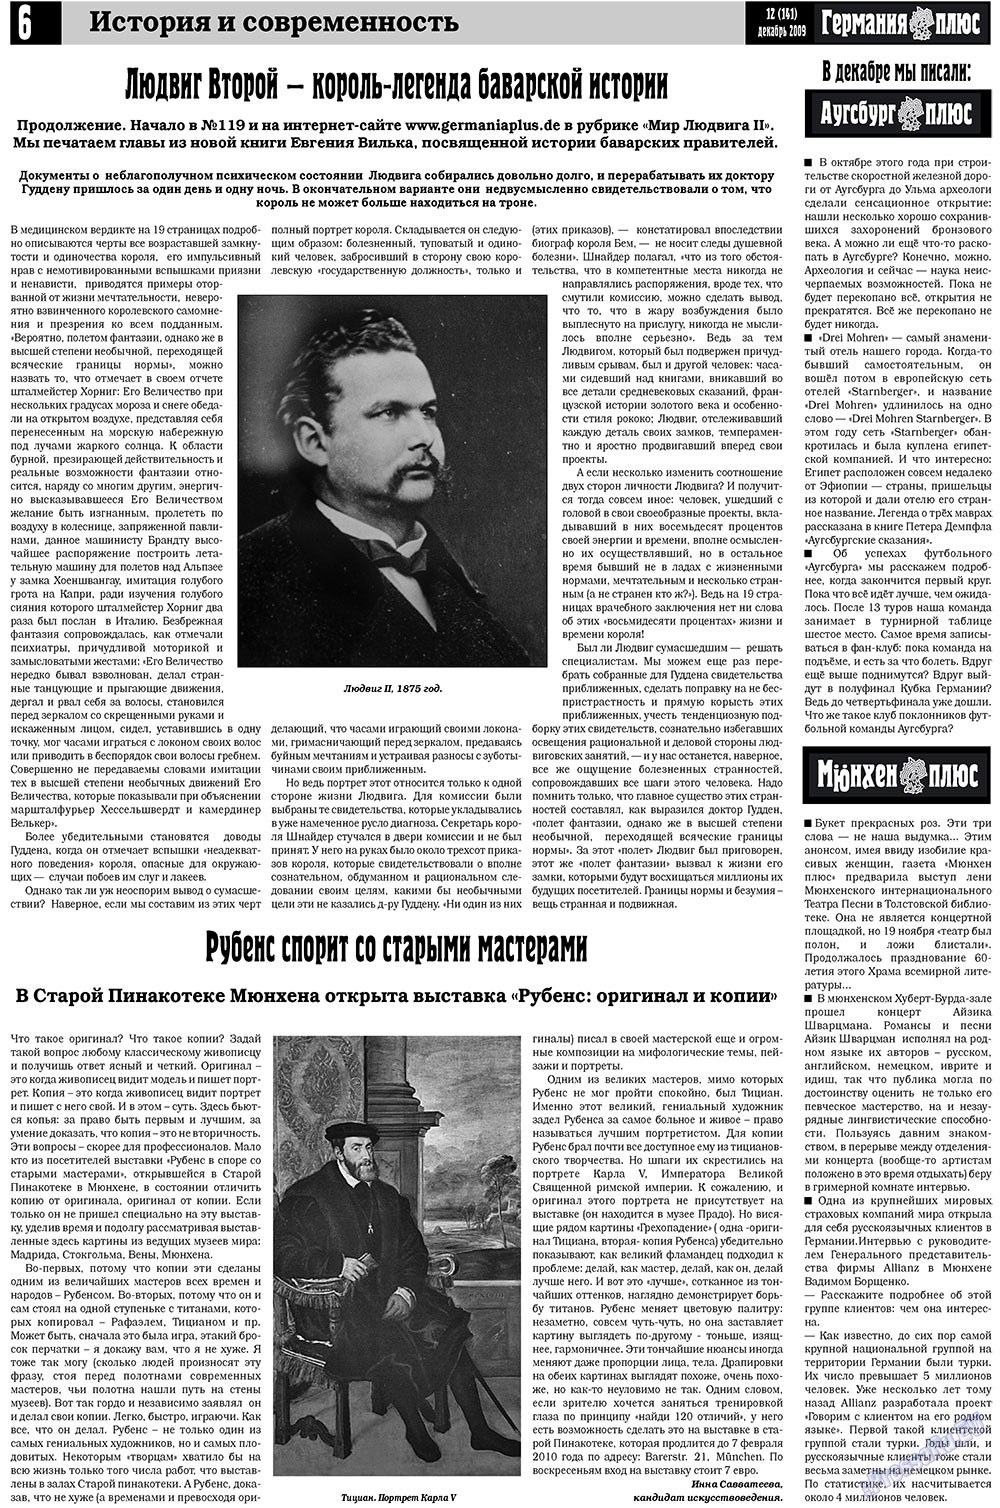 Германия плюс (газета). 2009 год, номер 12, стр. 6